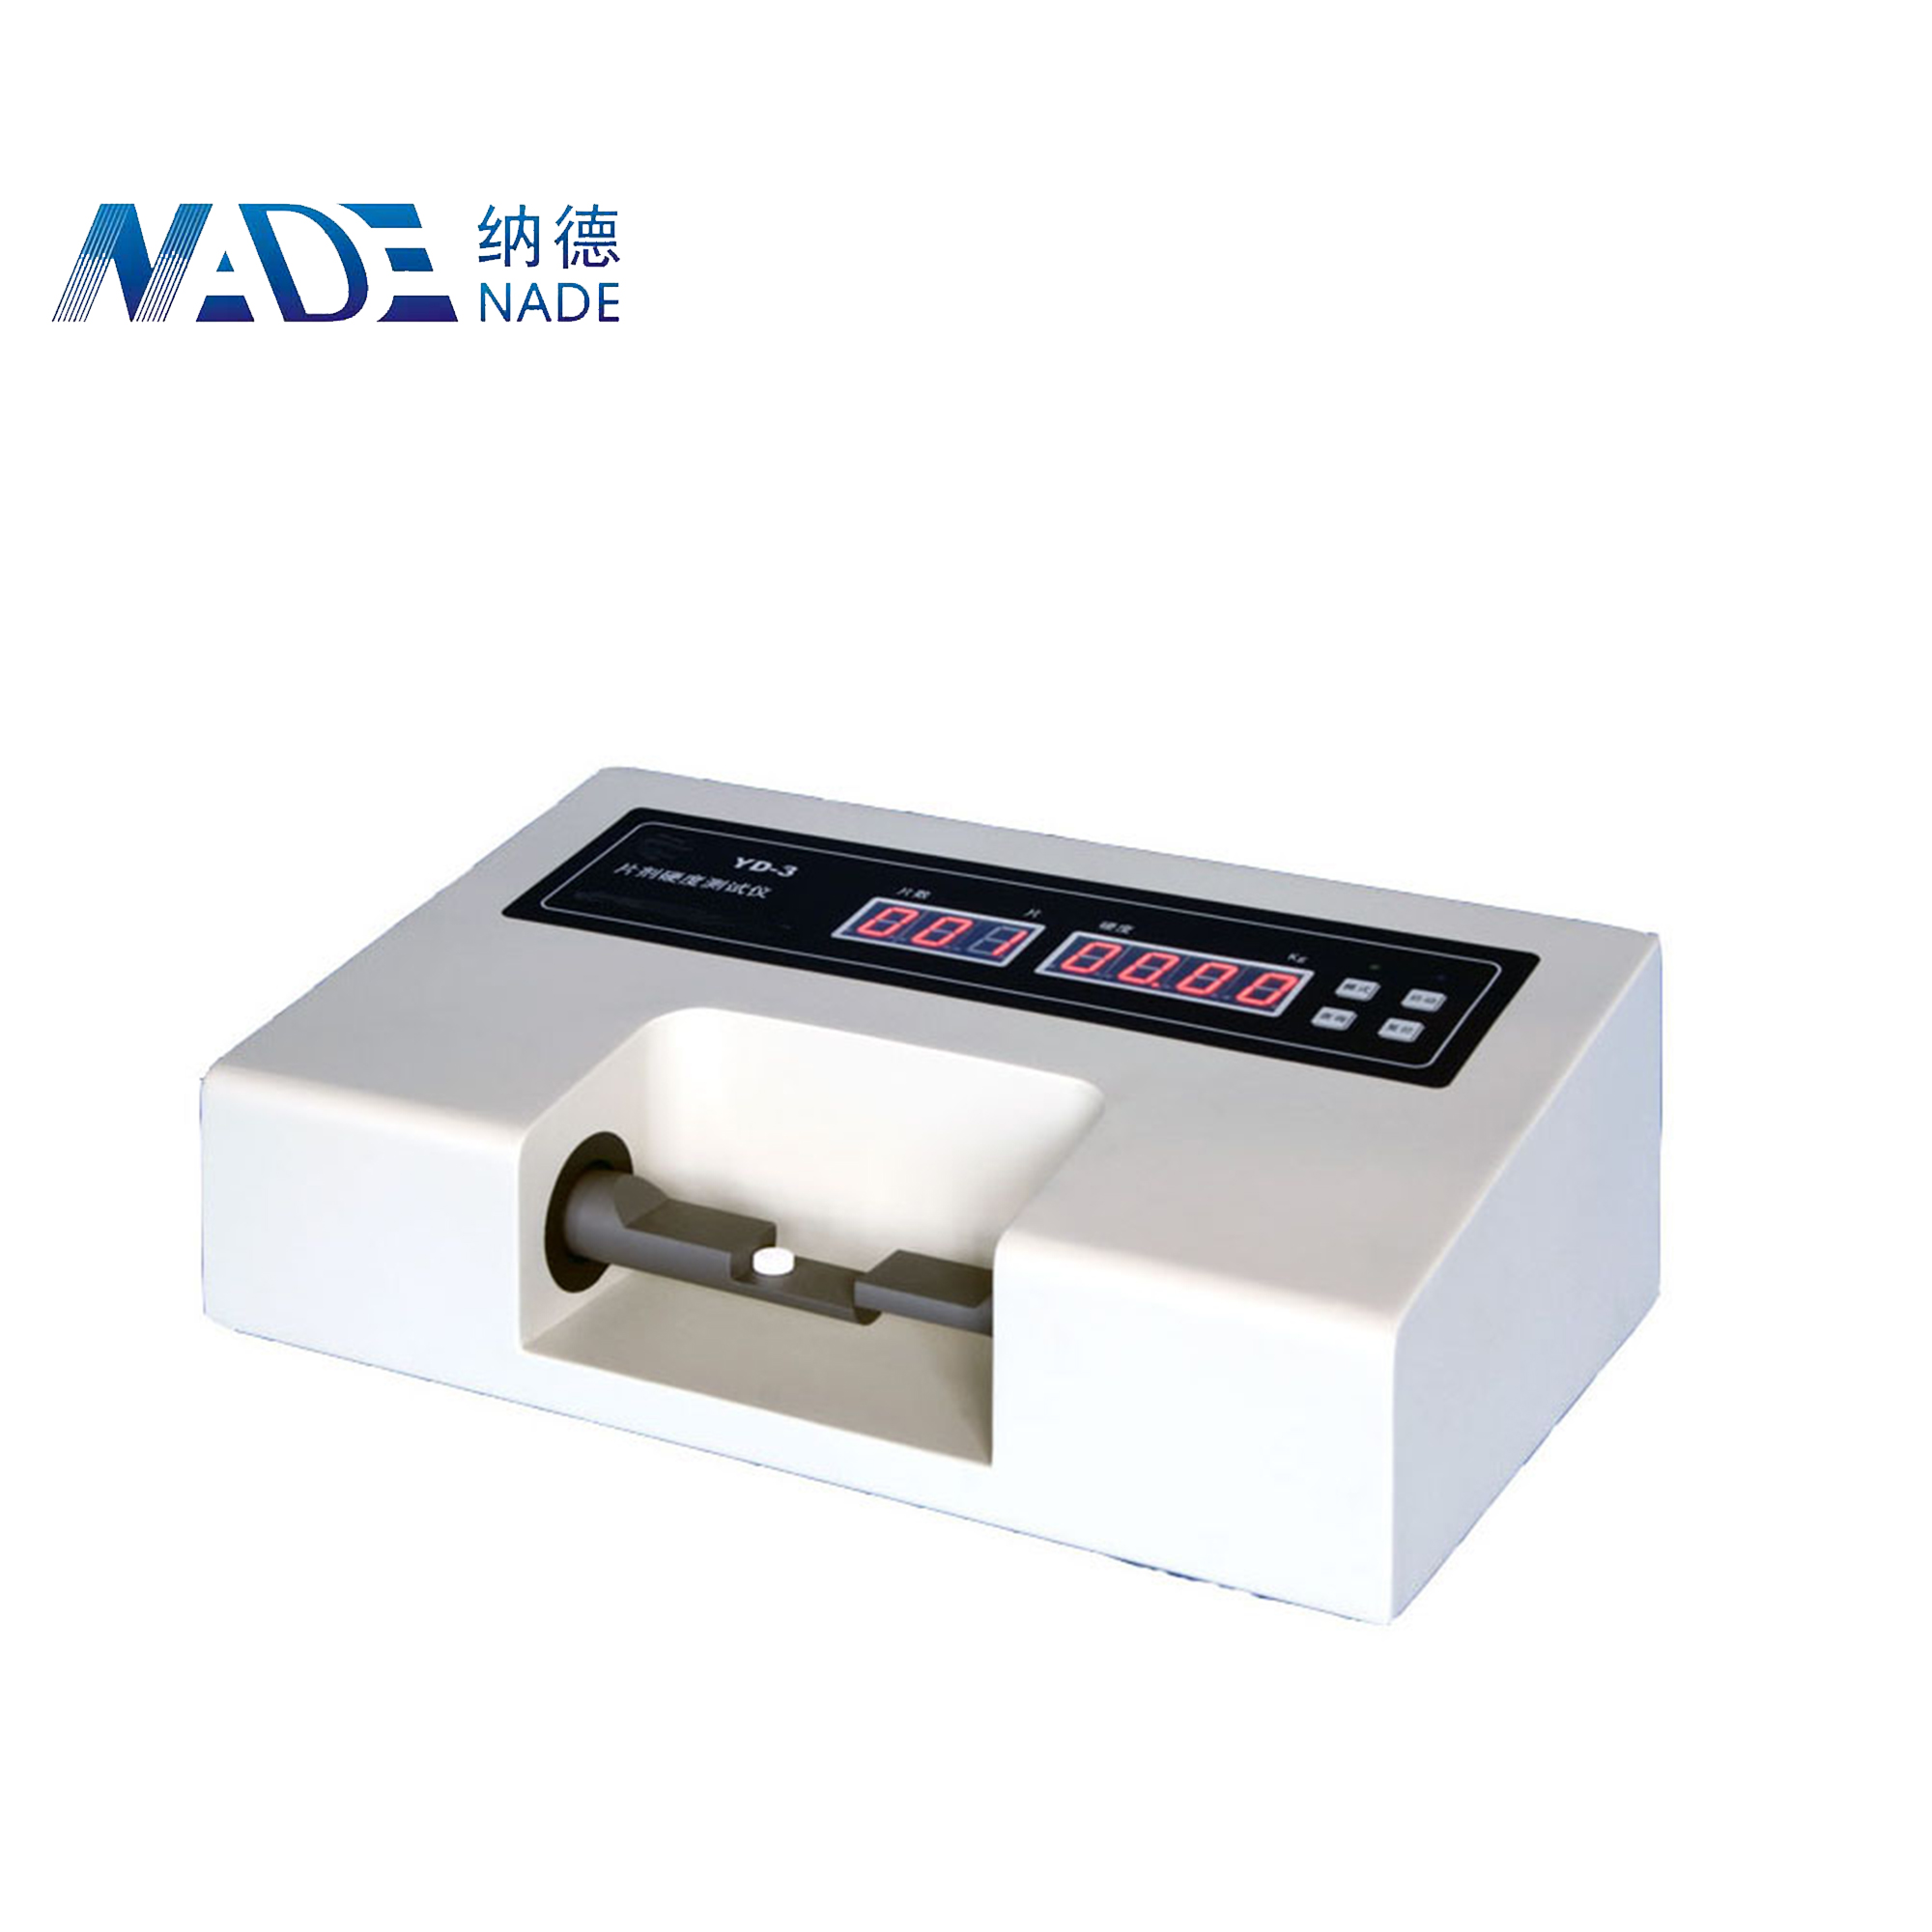 Nade Lab Tablet Hardness Tester YD-3 hardness meter